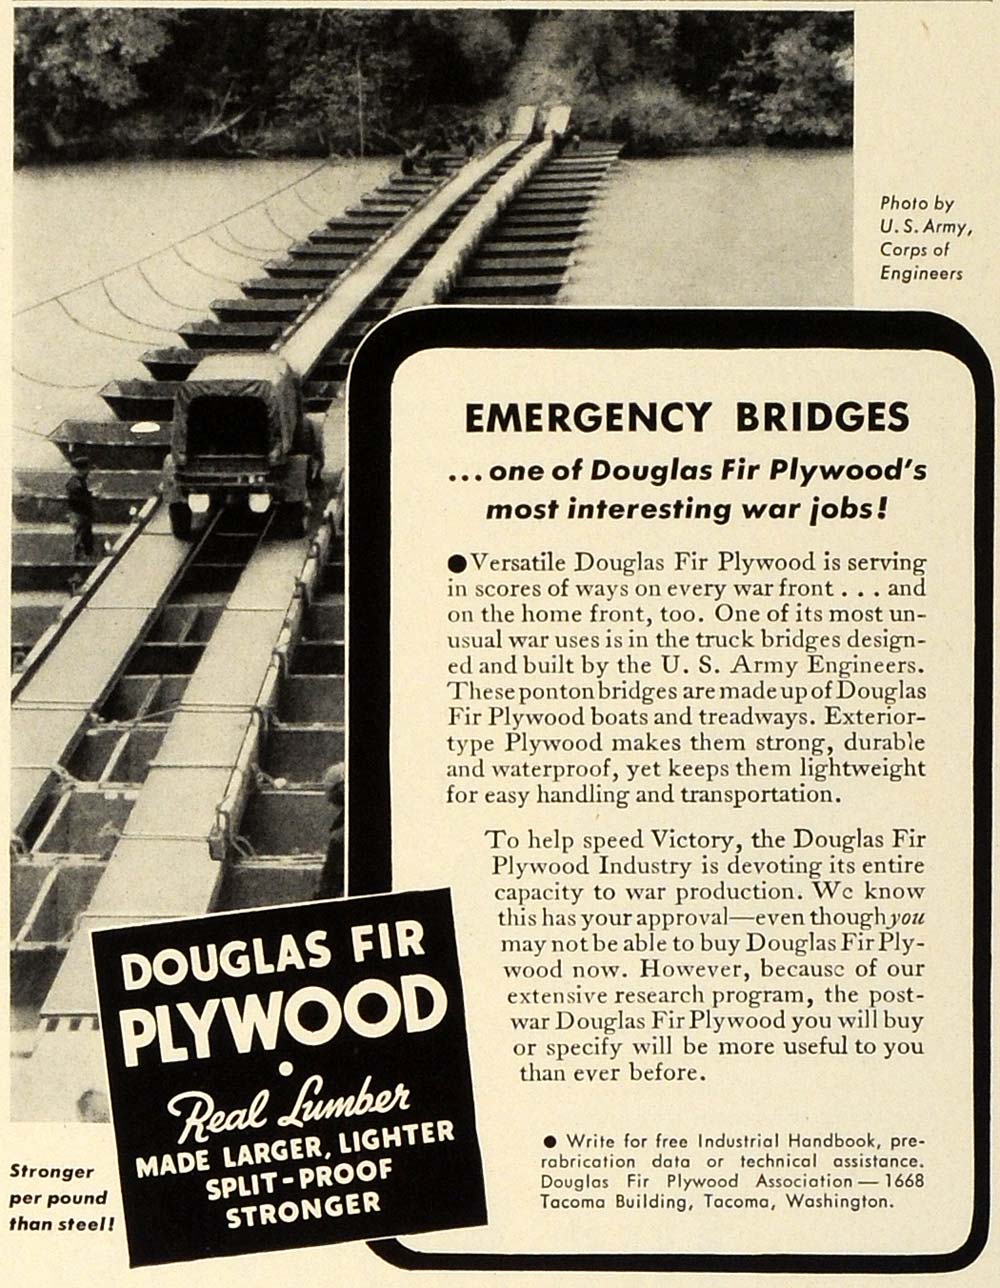 1942 Ad Douglas Fir Plywood Emergency Bridges World War II Army Corps FZ4